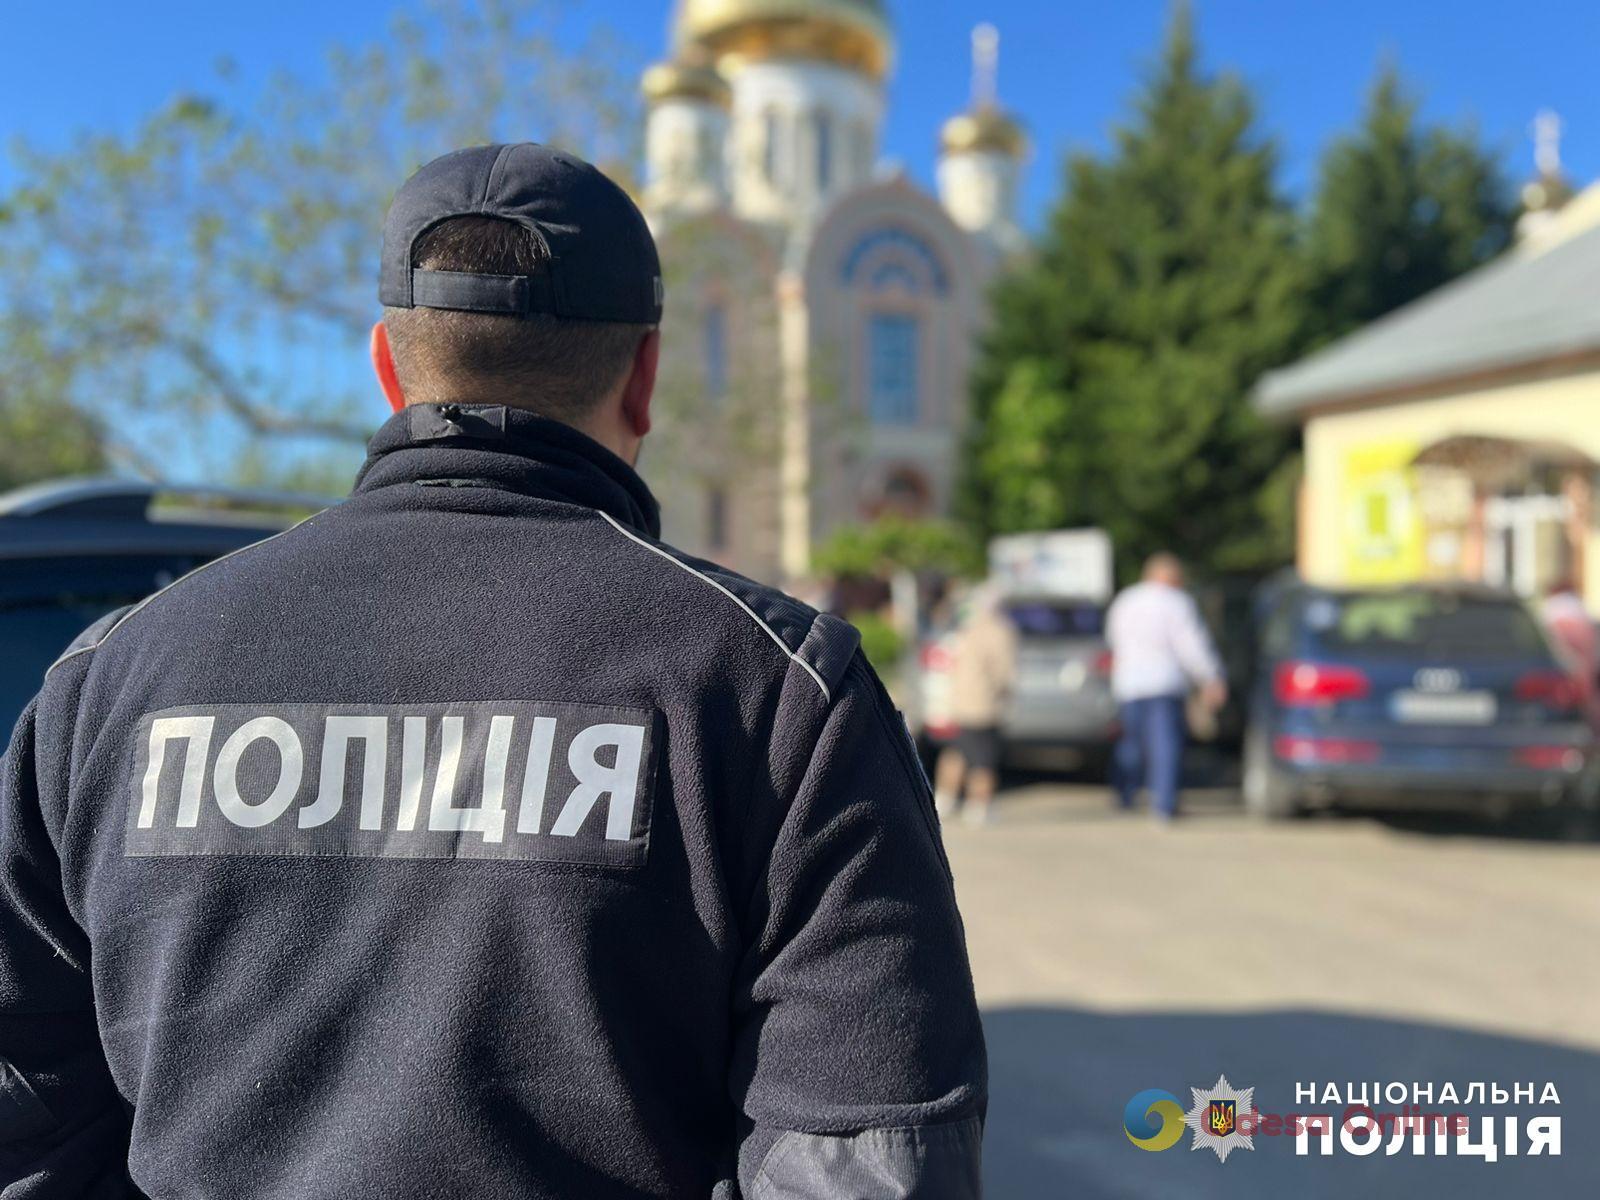 Пасха в Одесской области прошла без правонарушений, — полиция